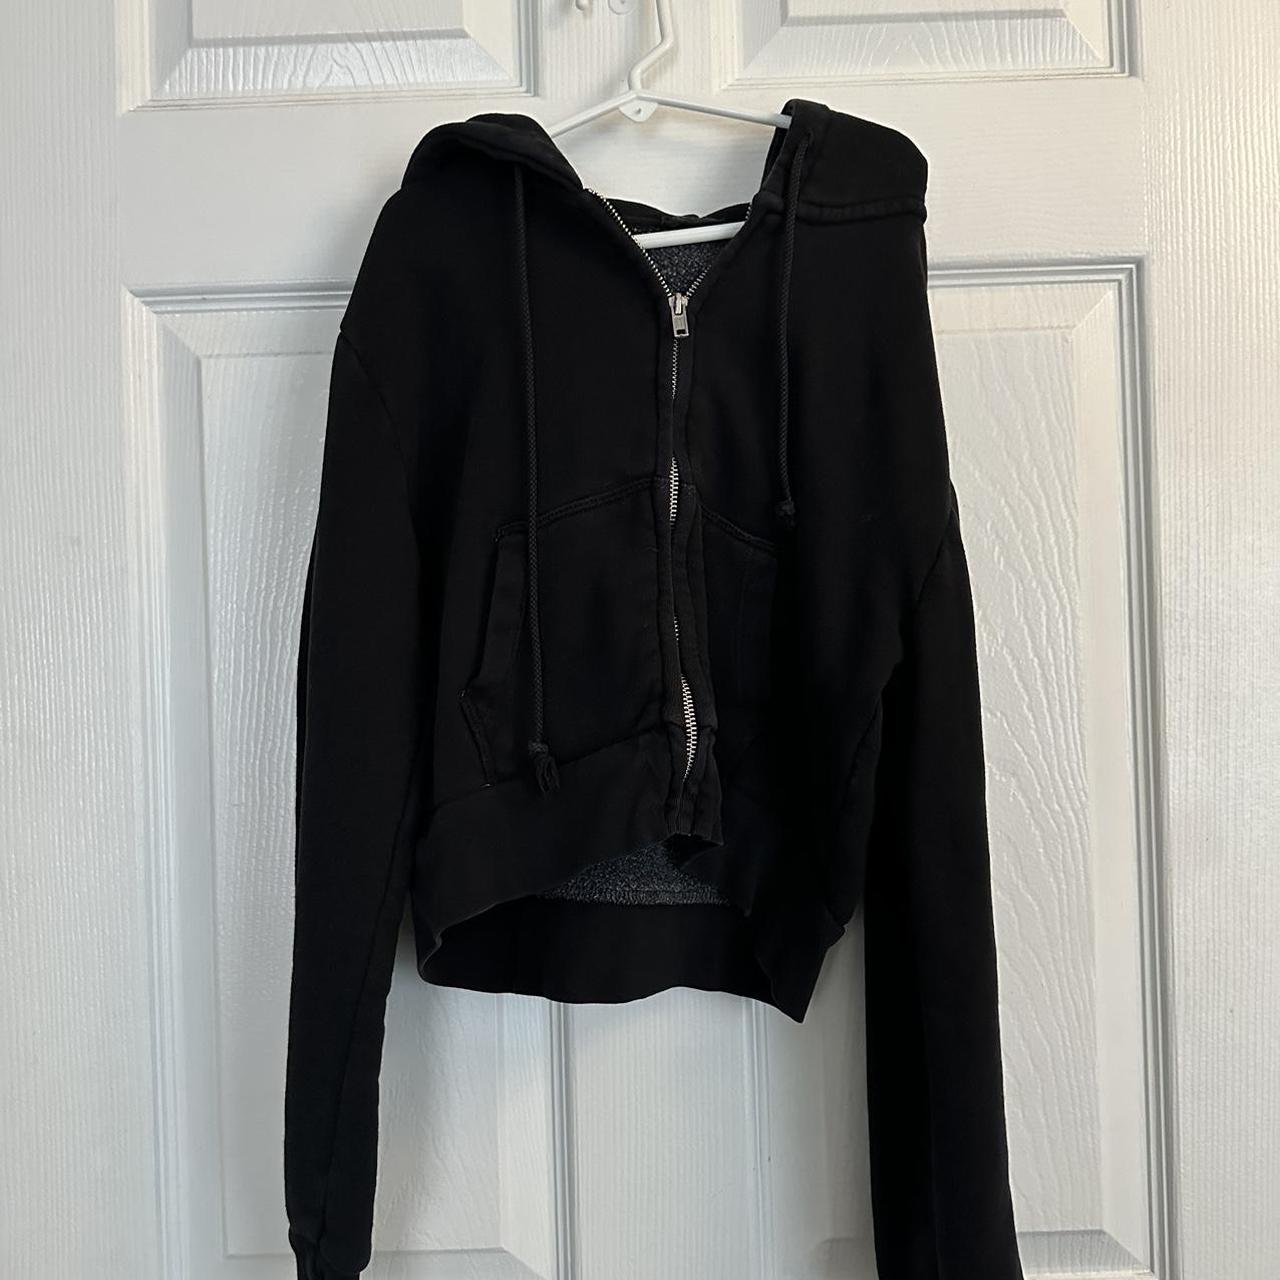 Brandy Melville Cropped Hoodie Black Sweatshirt - Gem